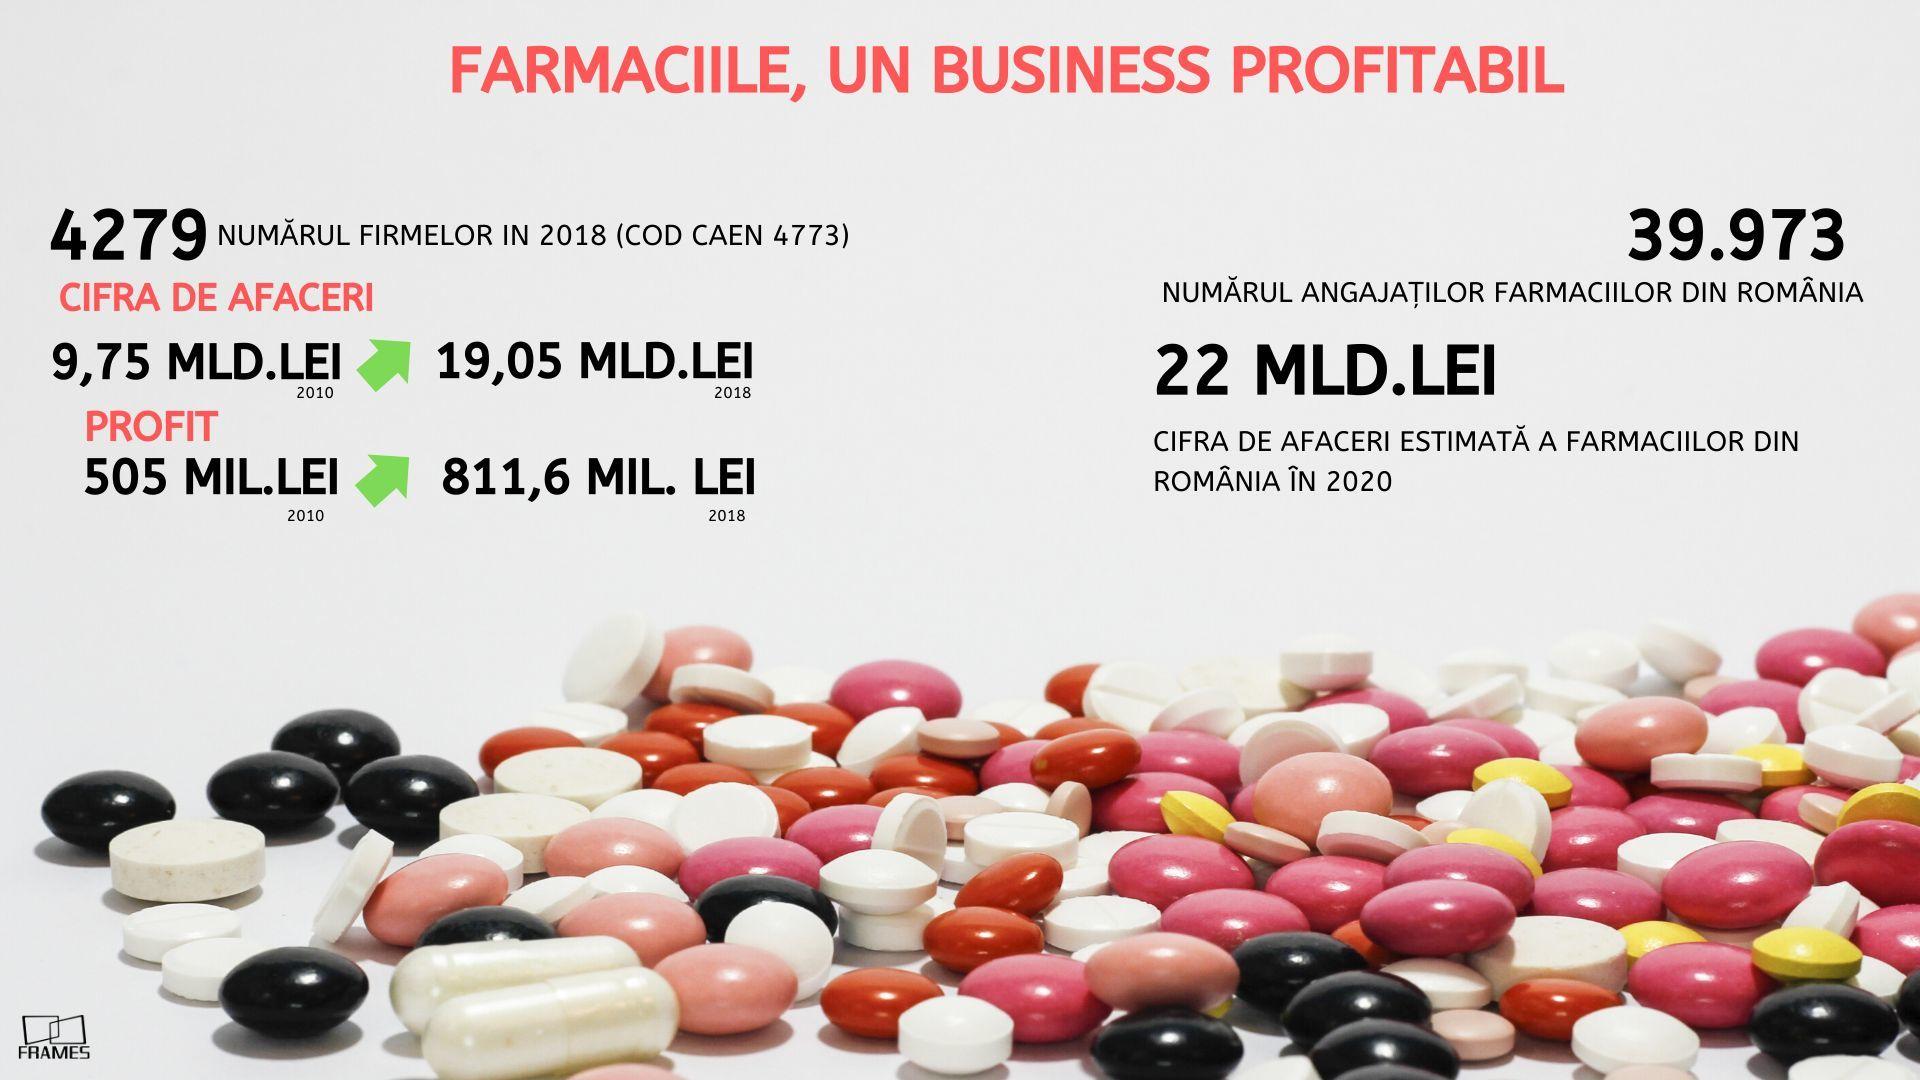 STUDIU: Farmaciile, un business profitabil în România. Au depăşit anul trecut afaceri de 20 miliarde lei, cele mai bune rezultate din istorie